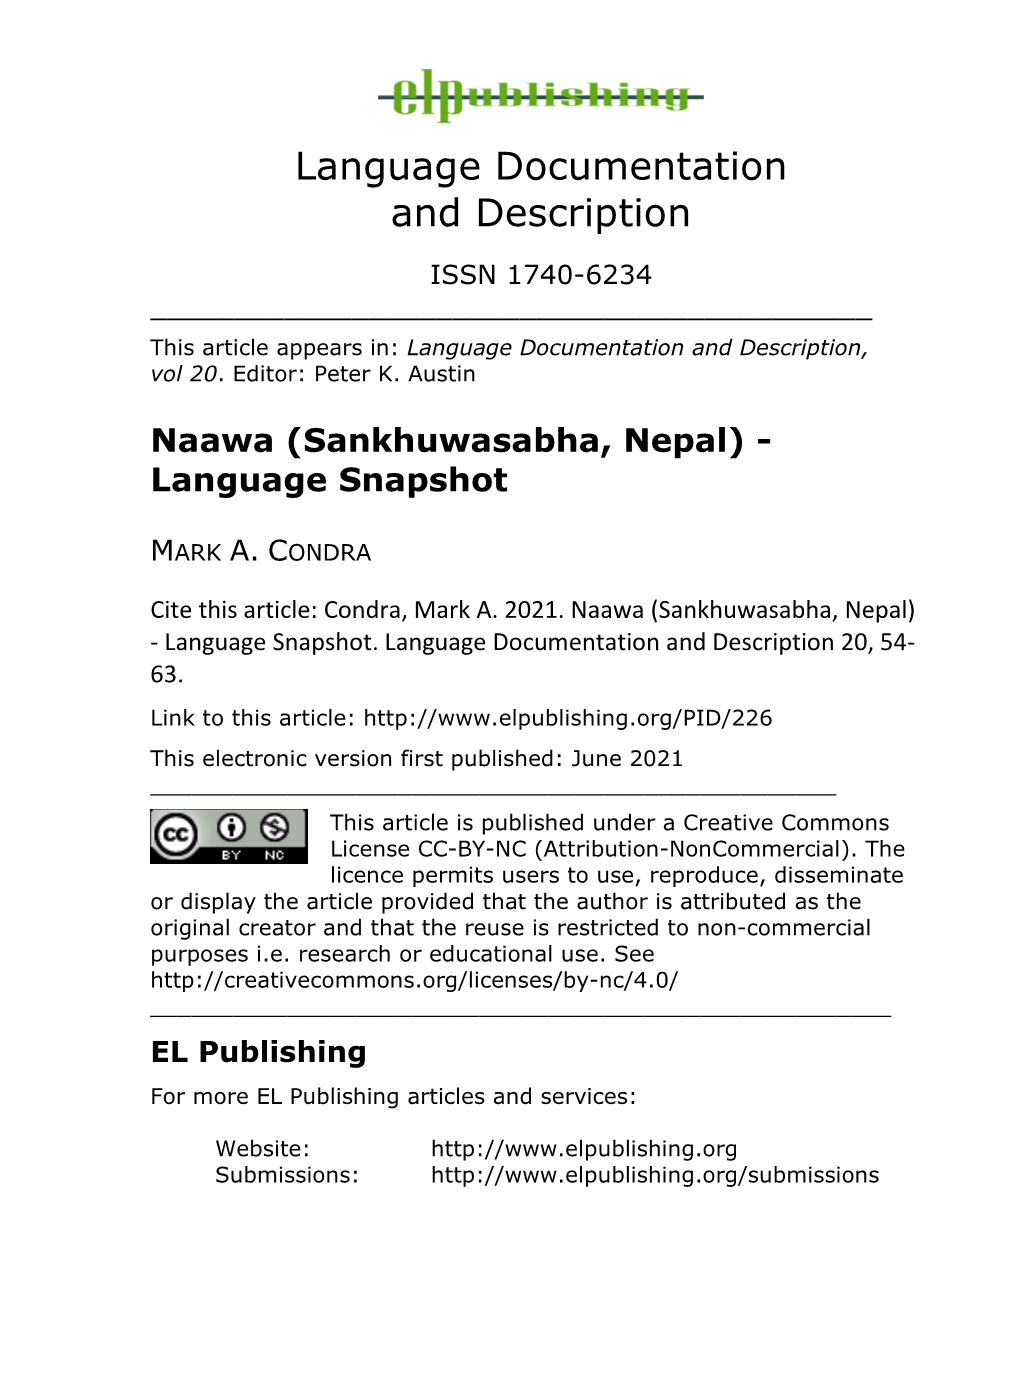 Naawa (Sankhuwasabha, Nepal) - Language Snapshot